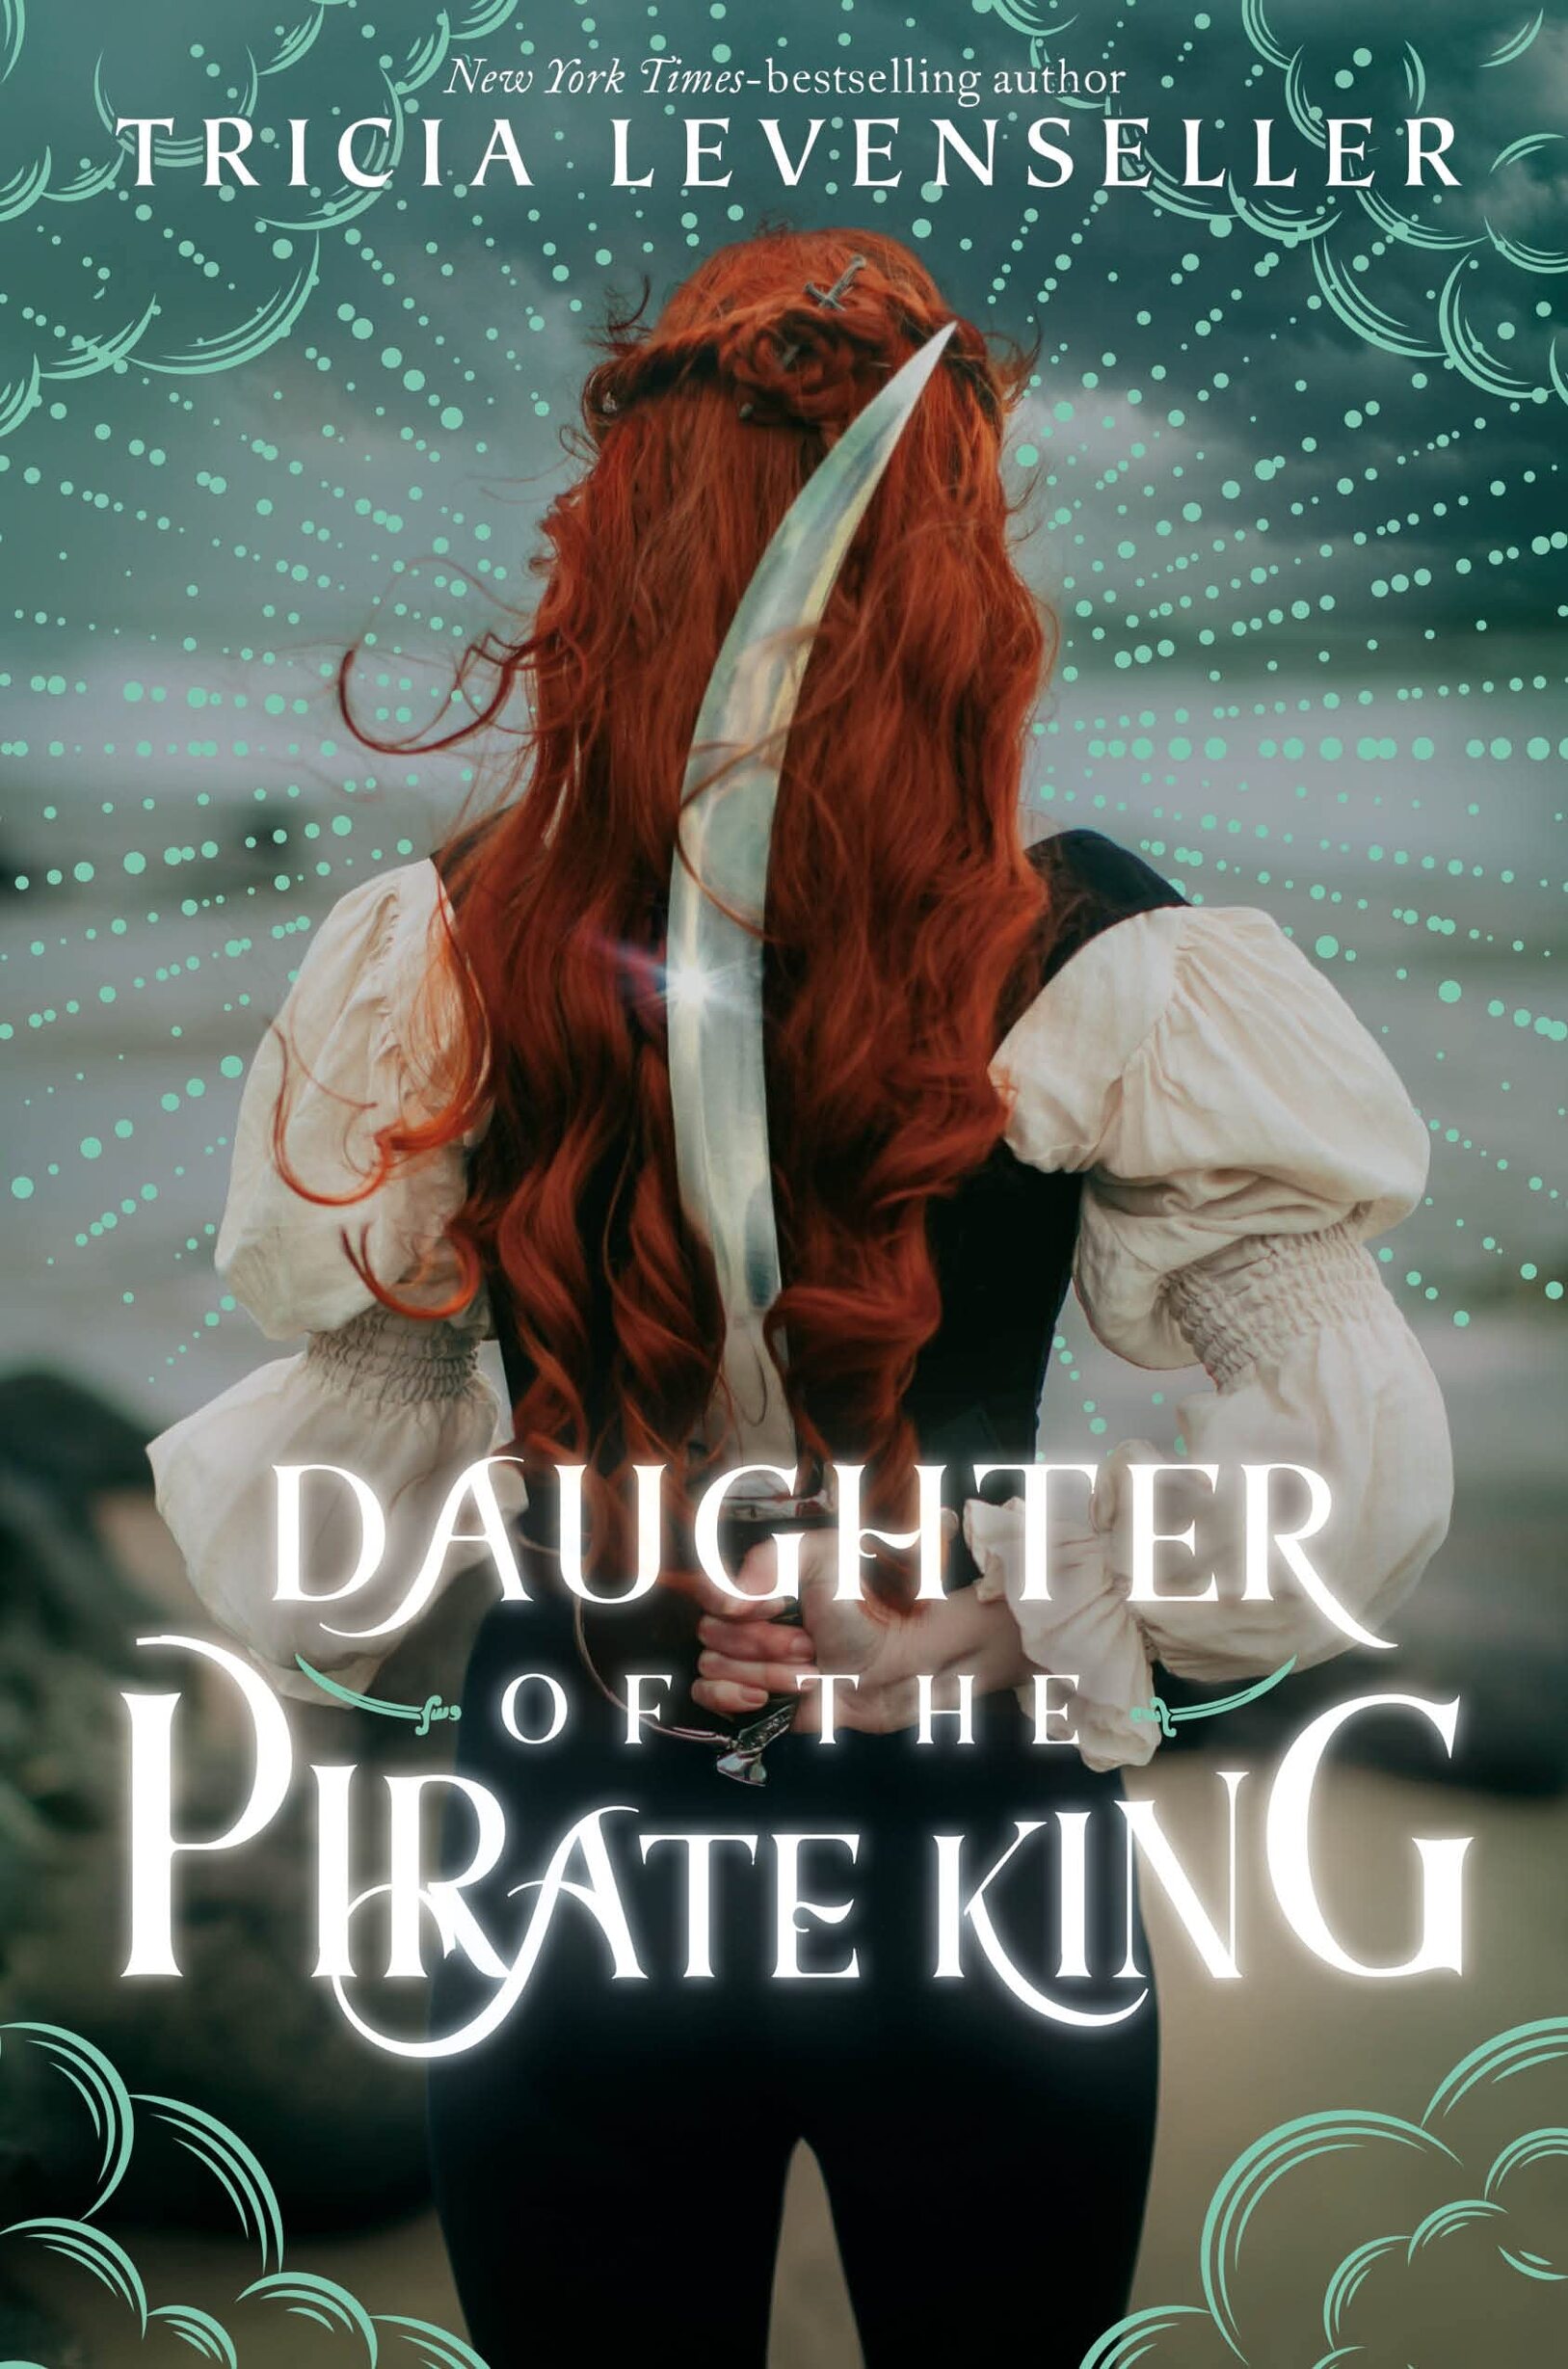 La fille du roi Pirate – La lectrice lunatique